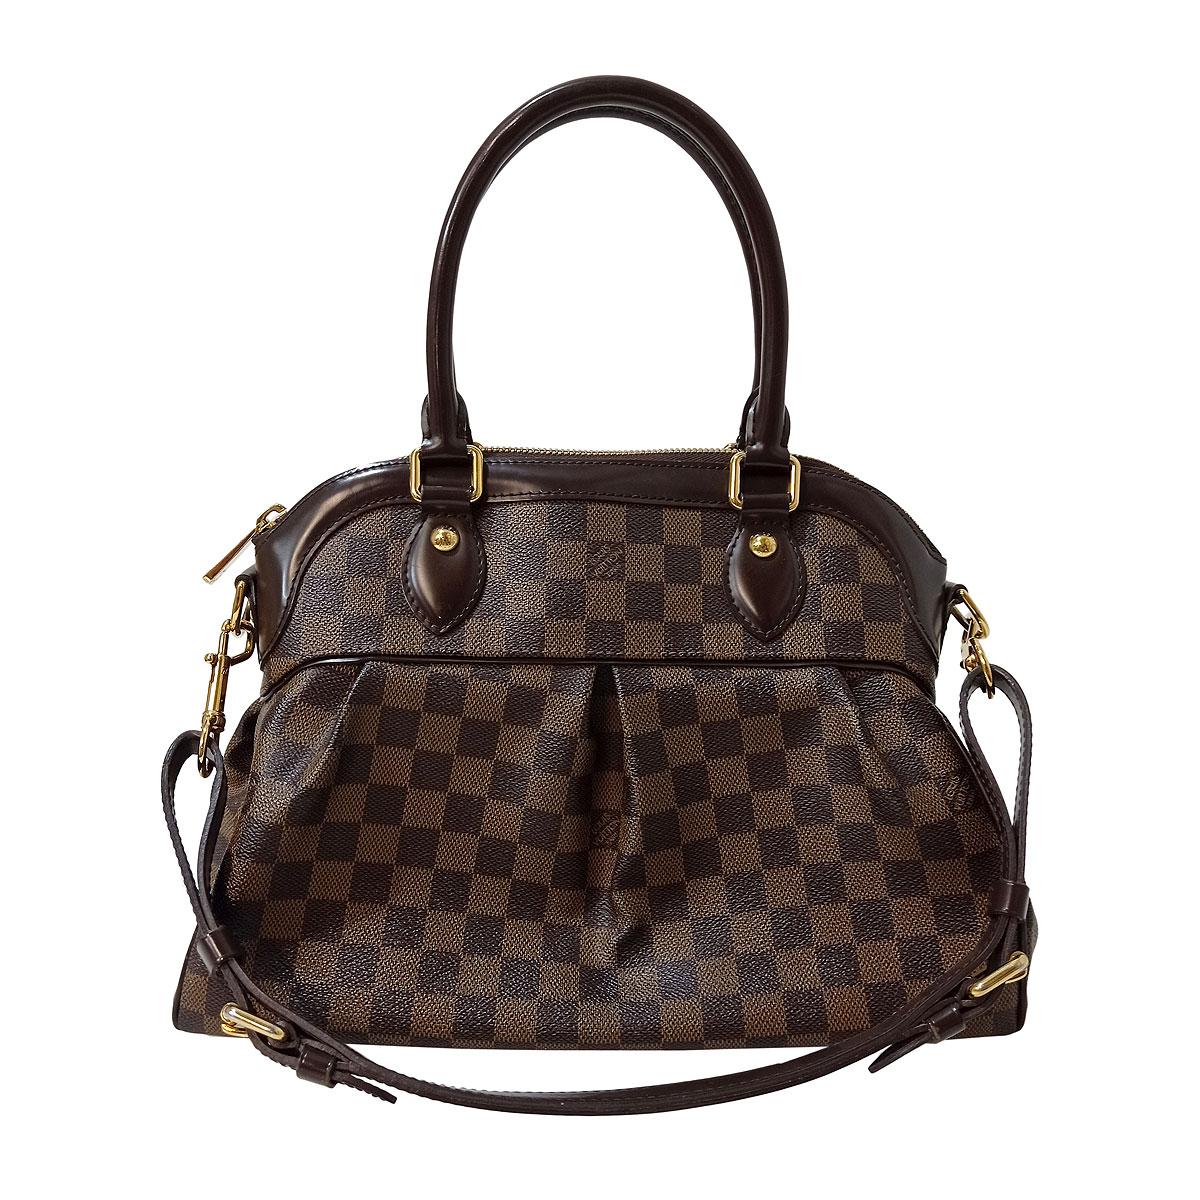 Louis Vuitton "Trevi" PM Bag